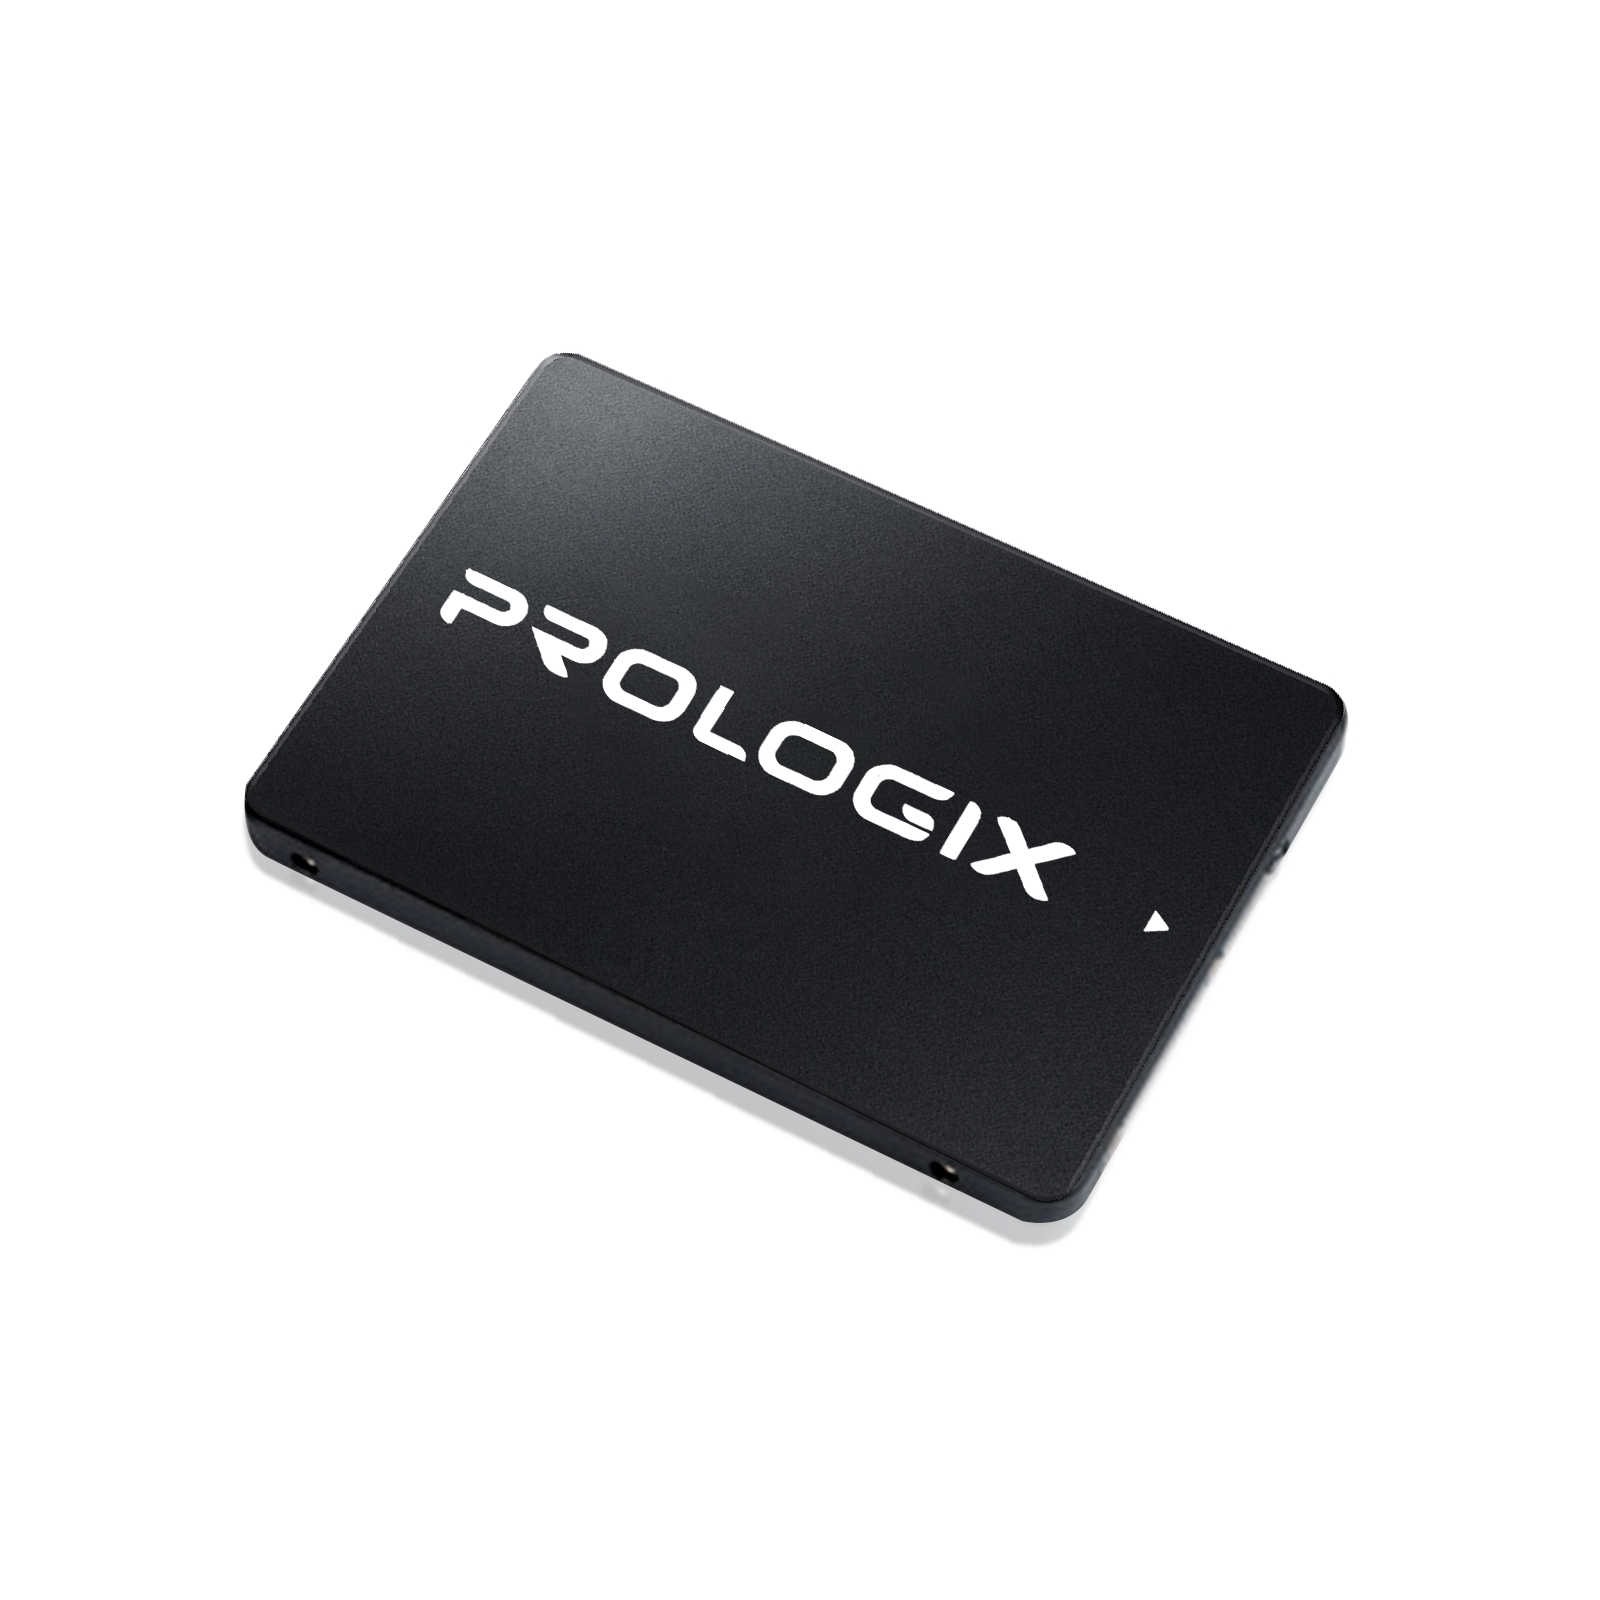 Накопичувач SSD 2.5" 120GB Prologix (PRO120GS320) зображення 2